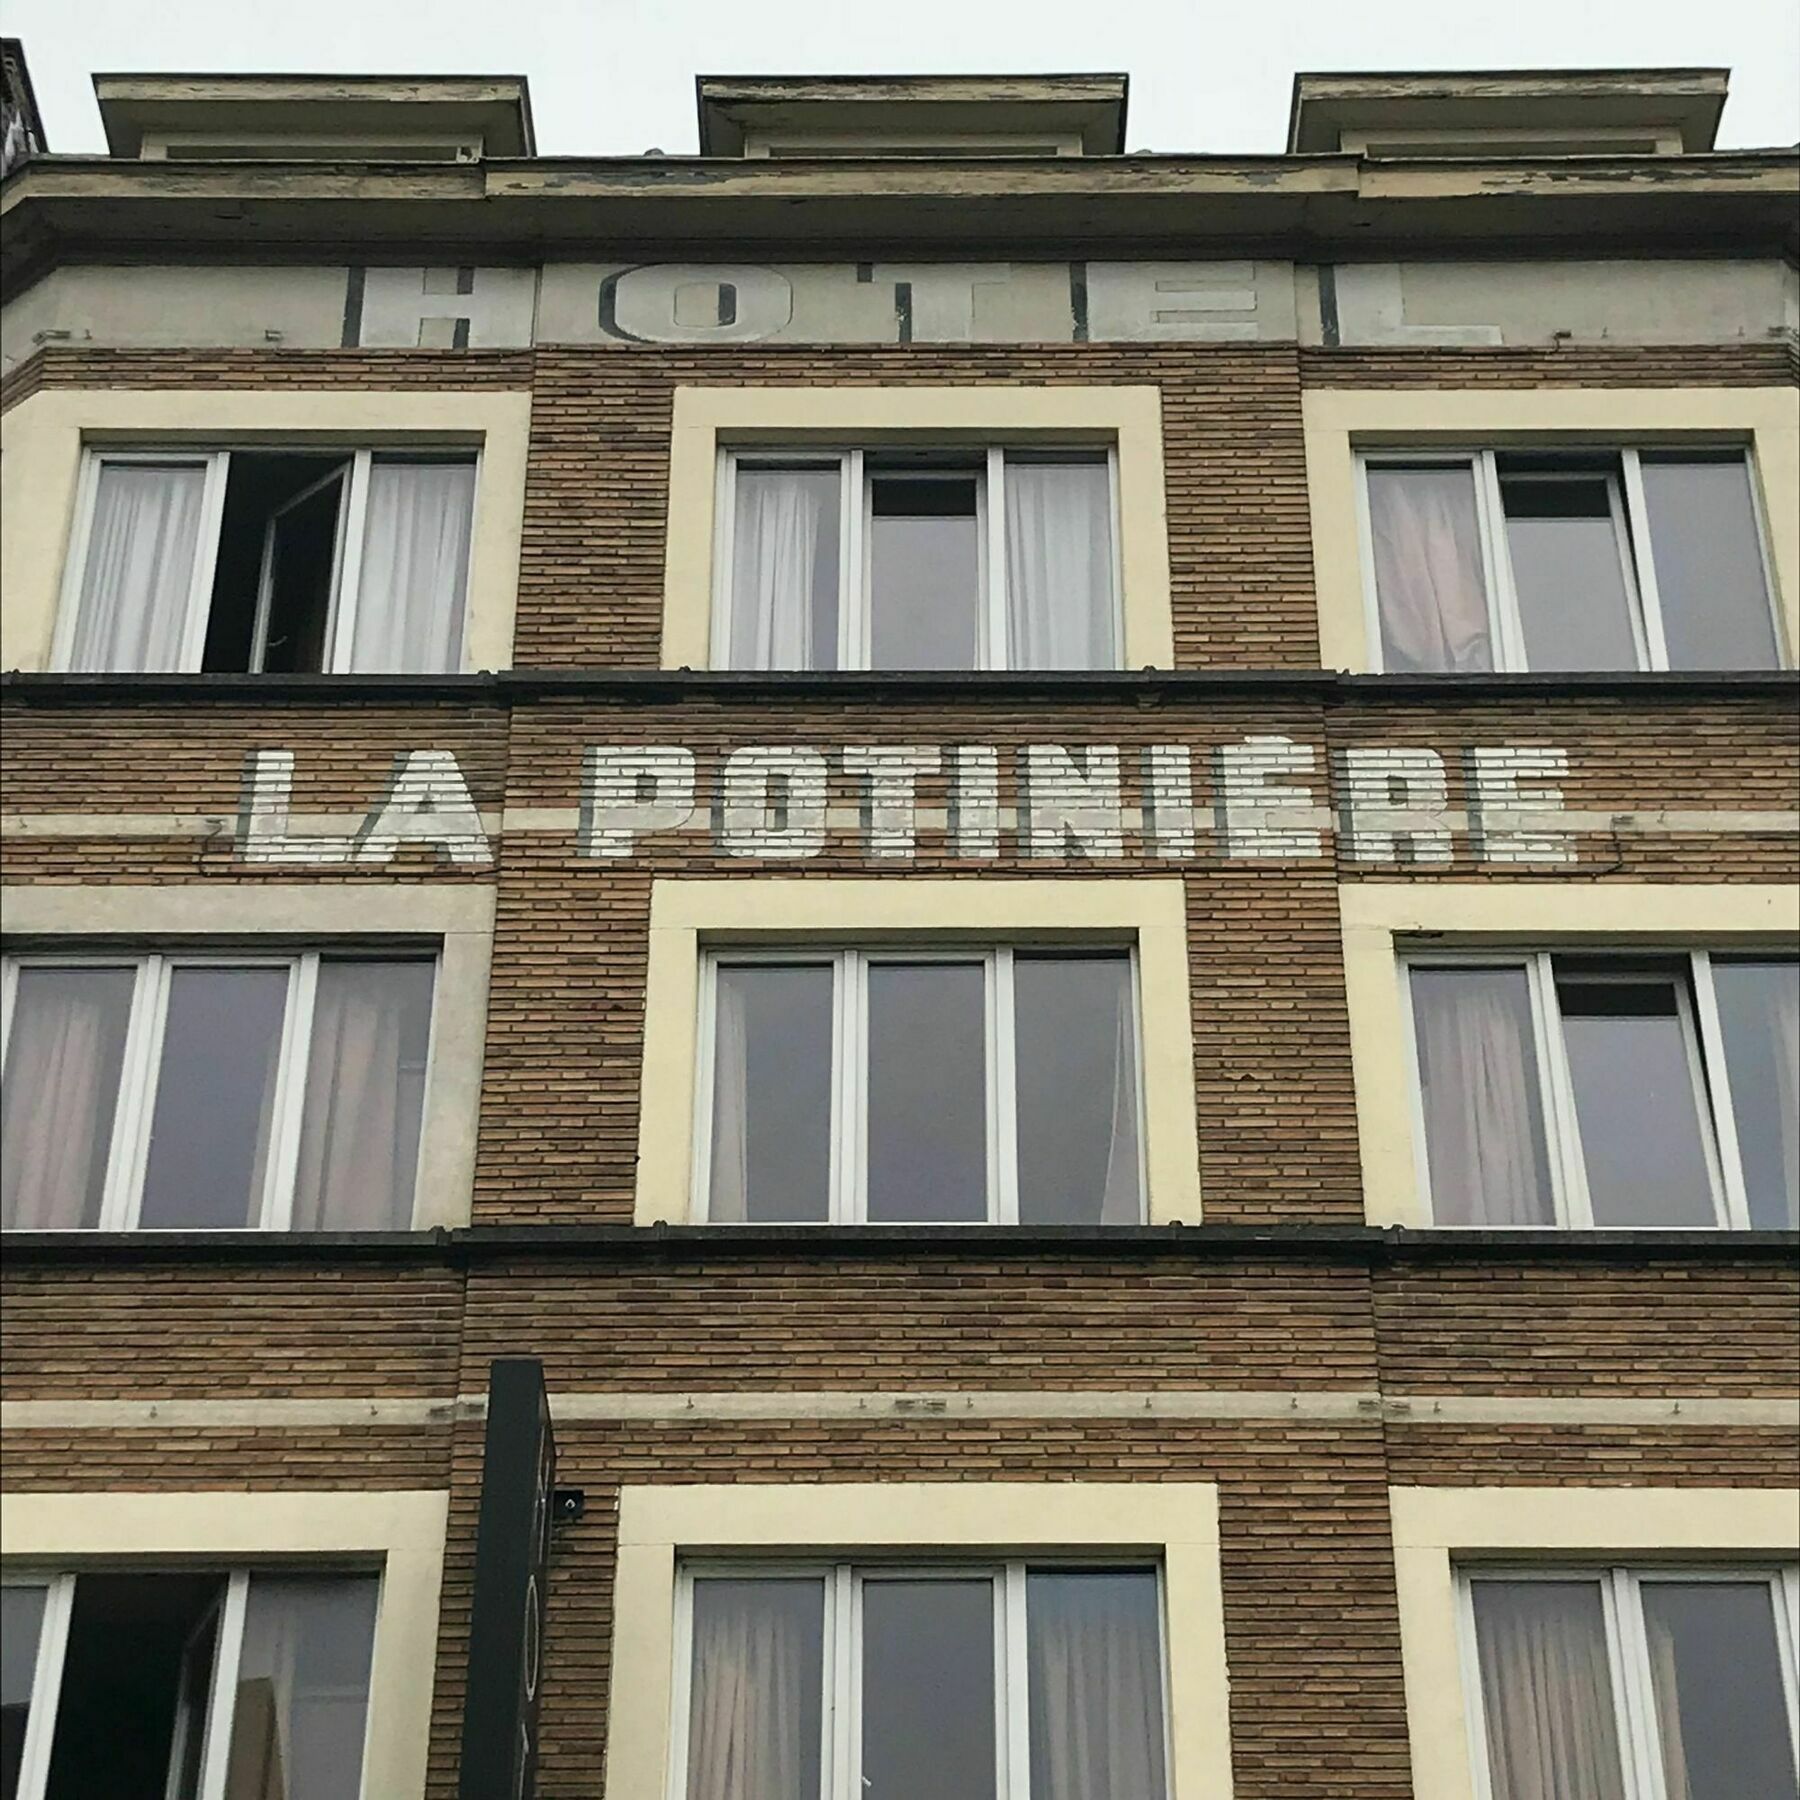 Hotel La Potiniere Bruselas Exterior foto